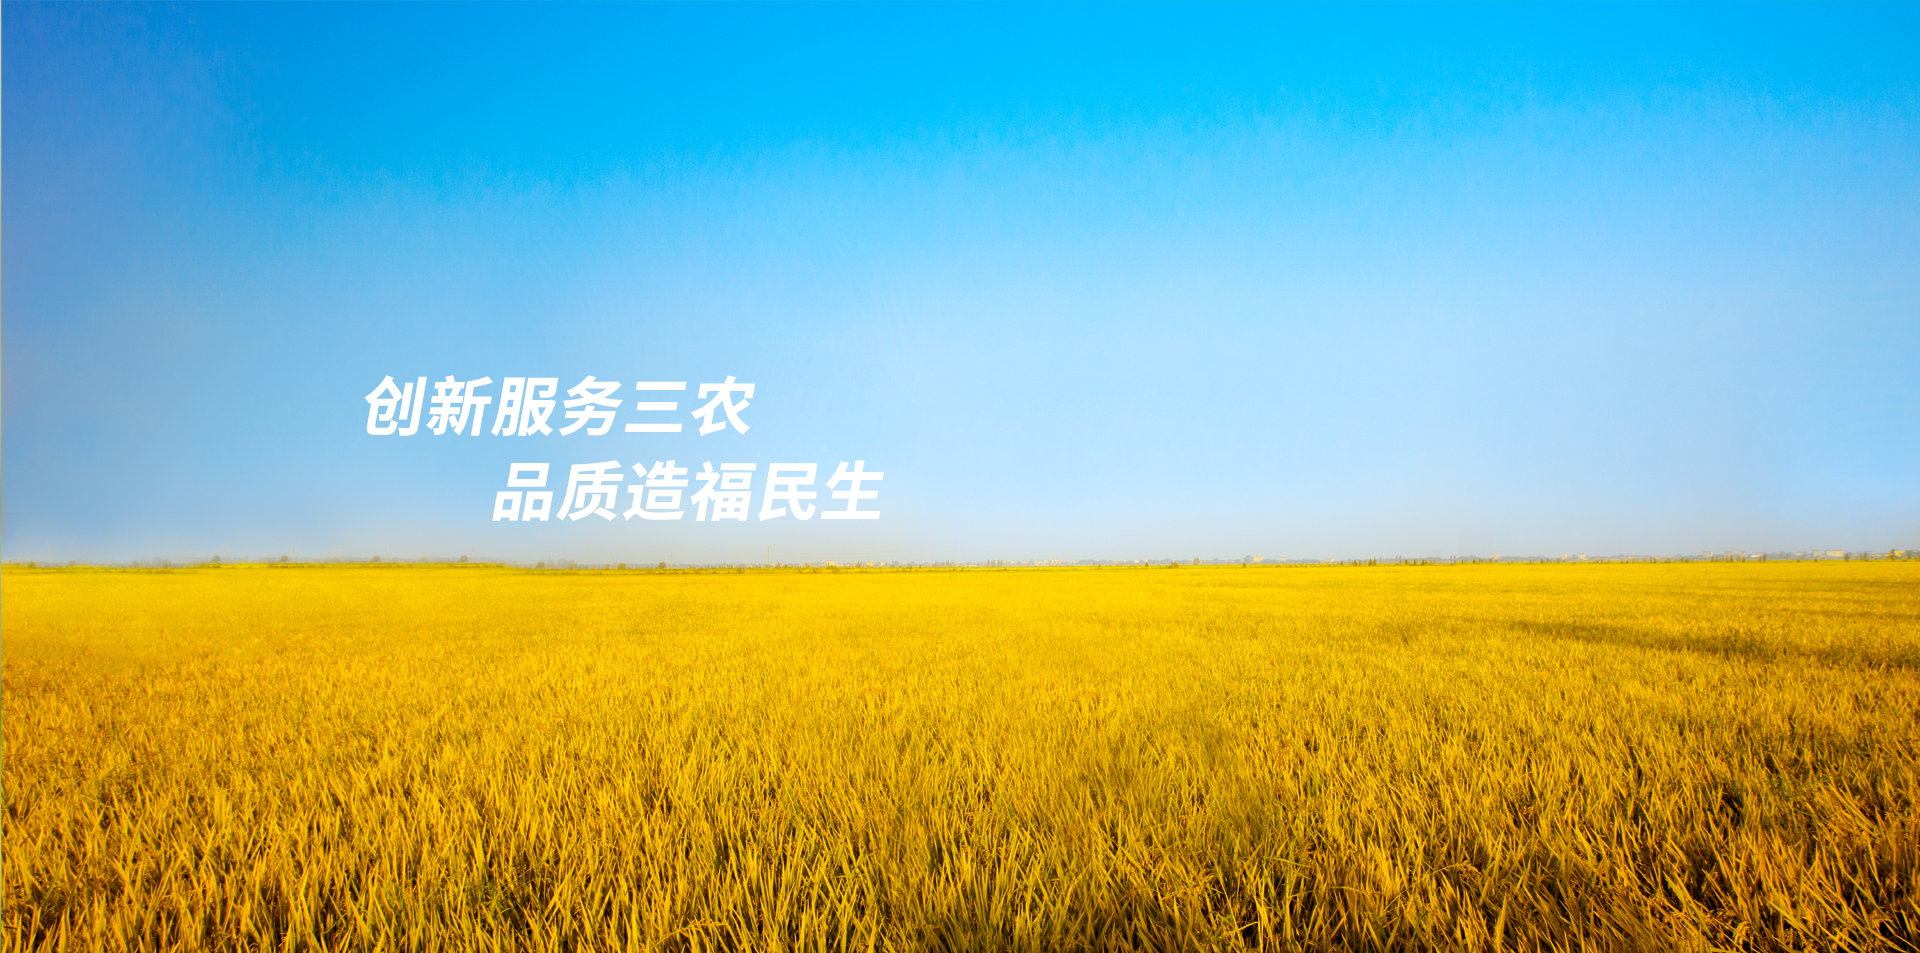 四川省种子协会	